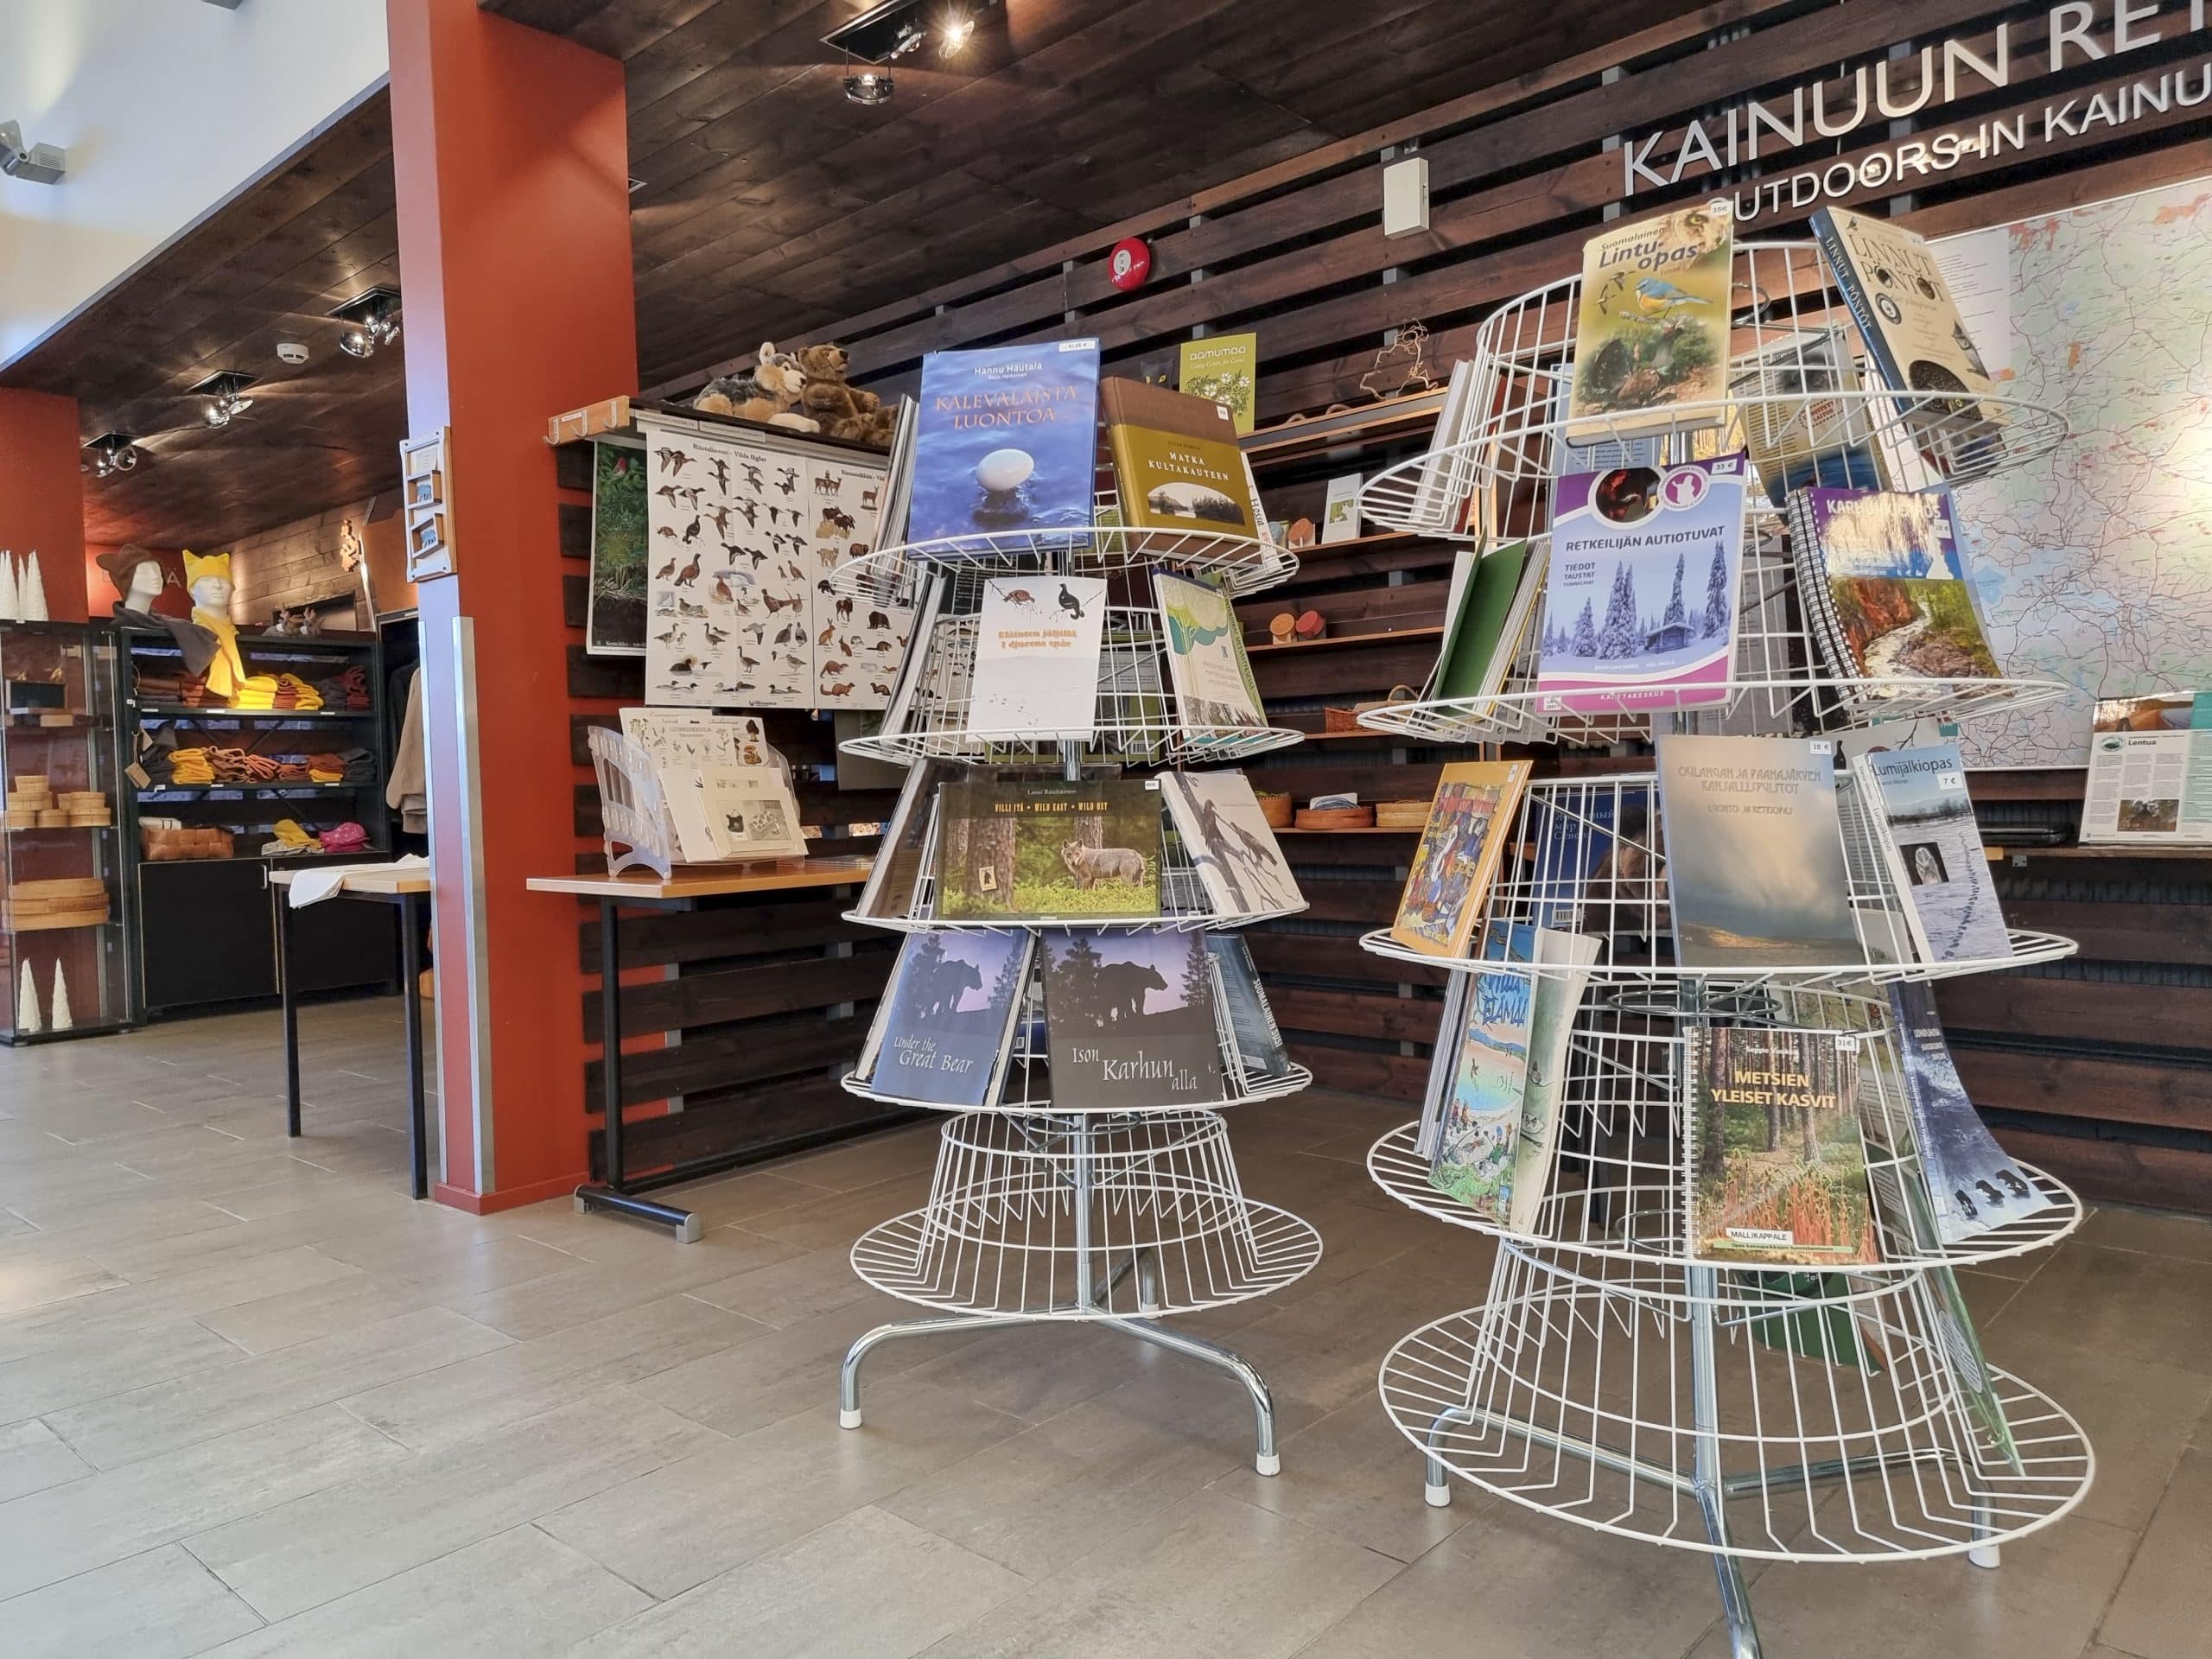 Kuhmolaisessa Luontokeskus Petolassa myynnissä on muun muassa kirjoja ja kortteja.